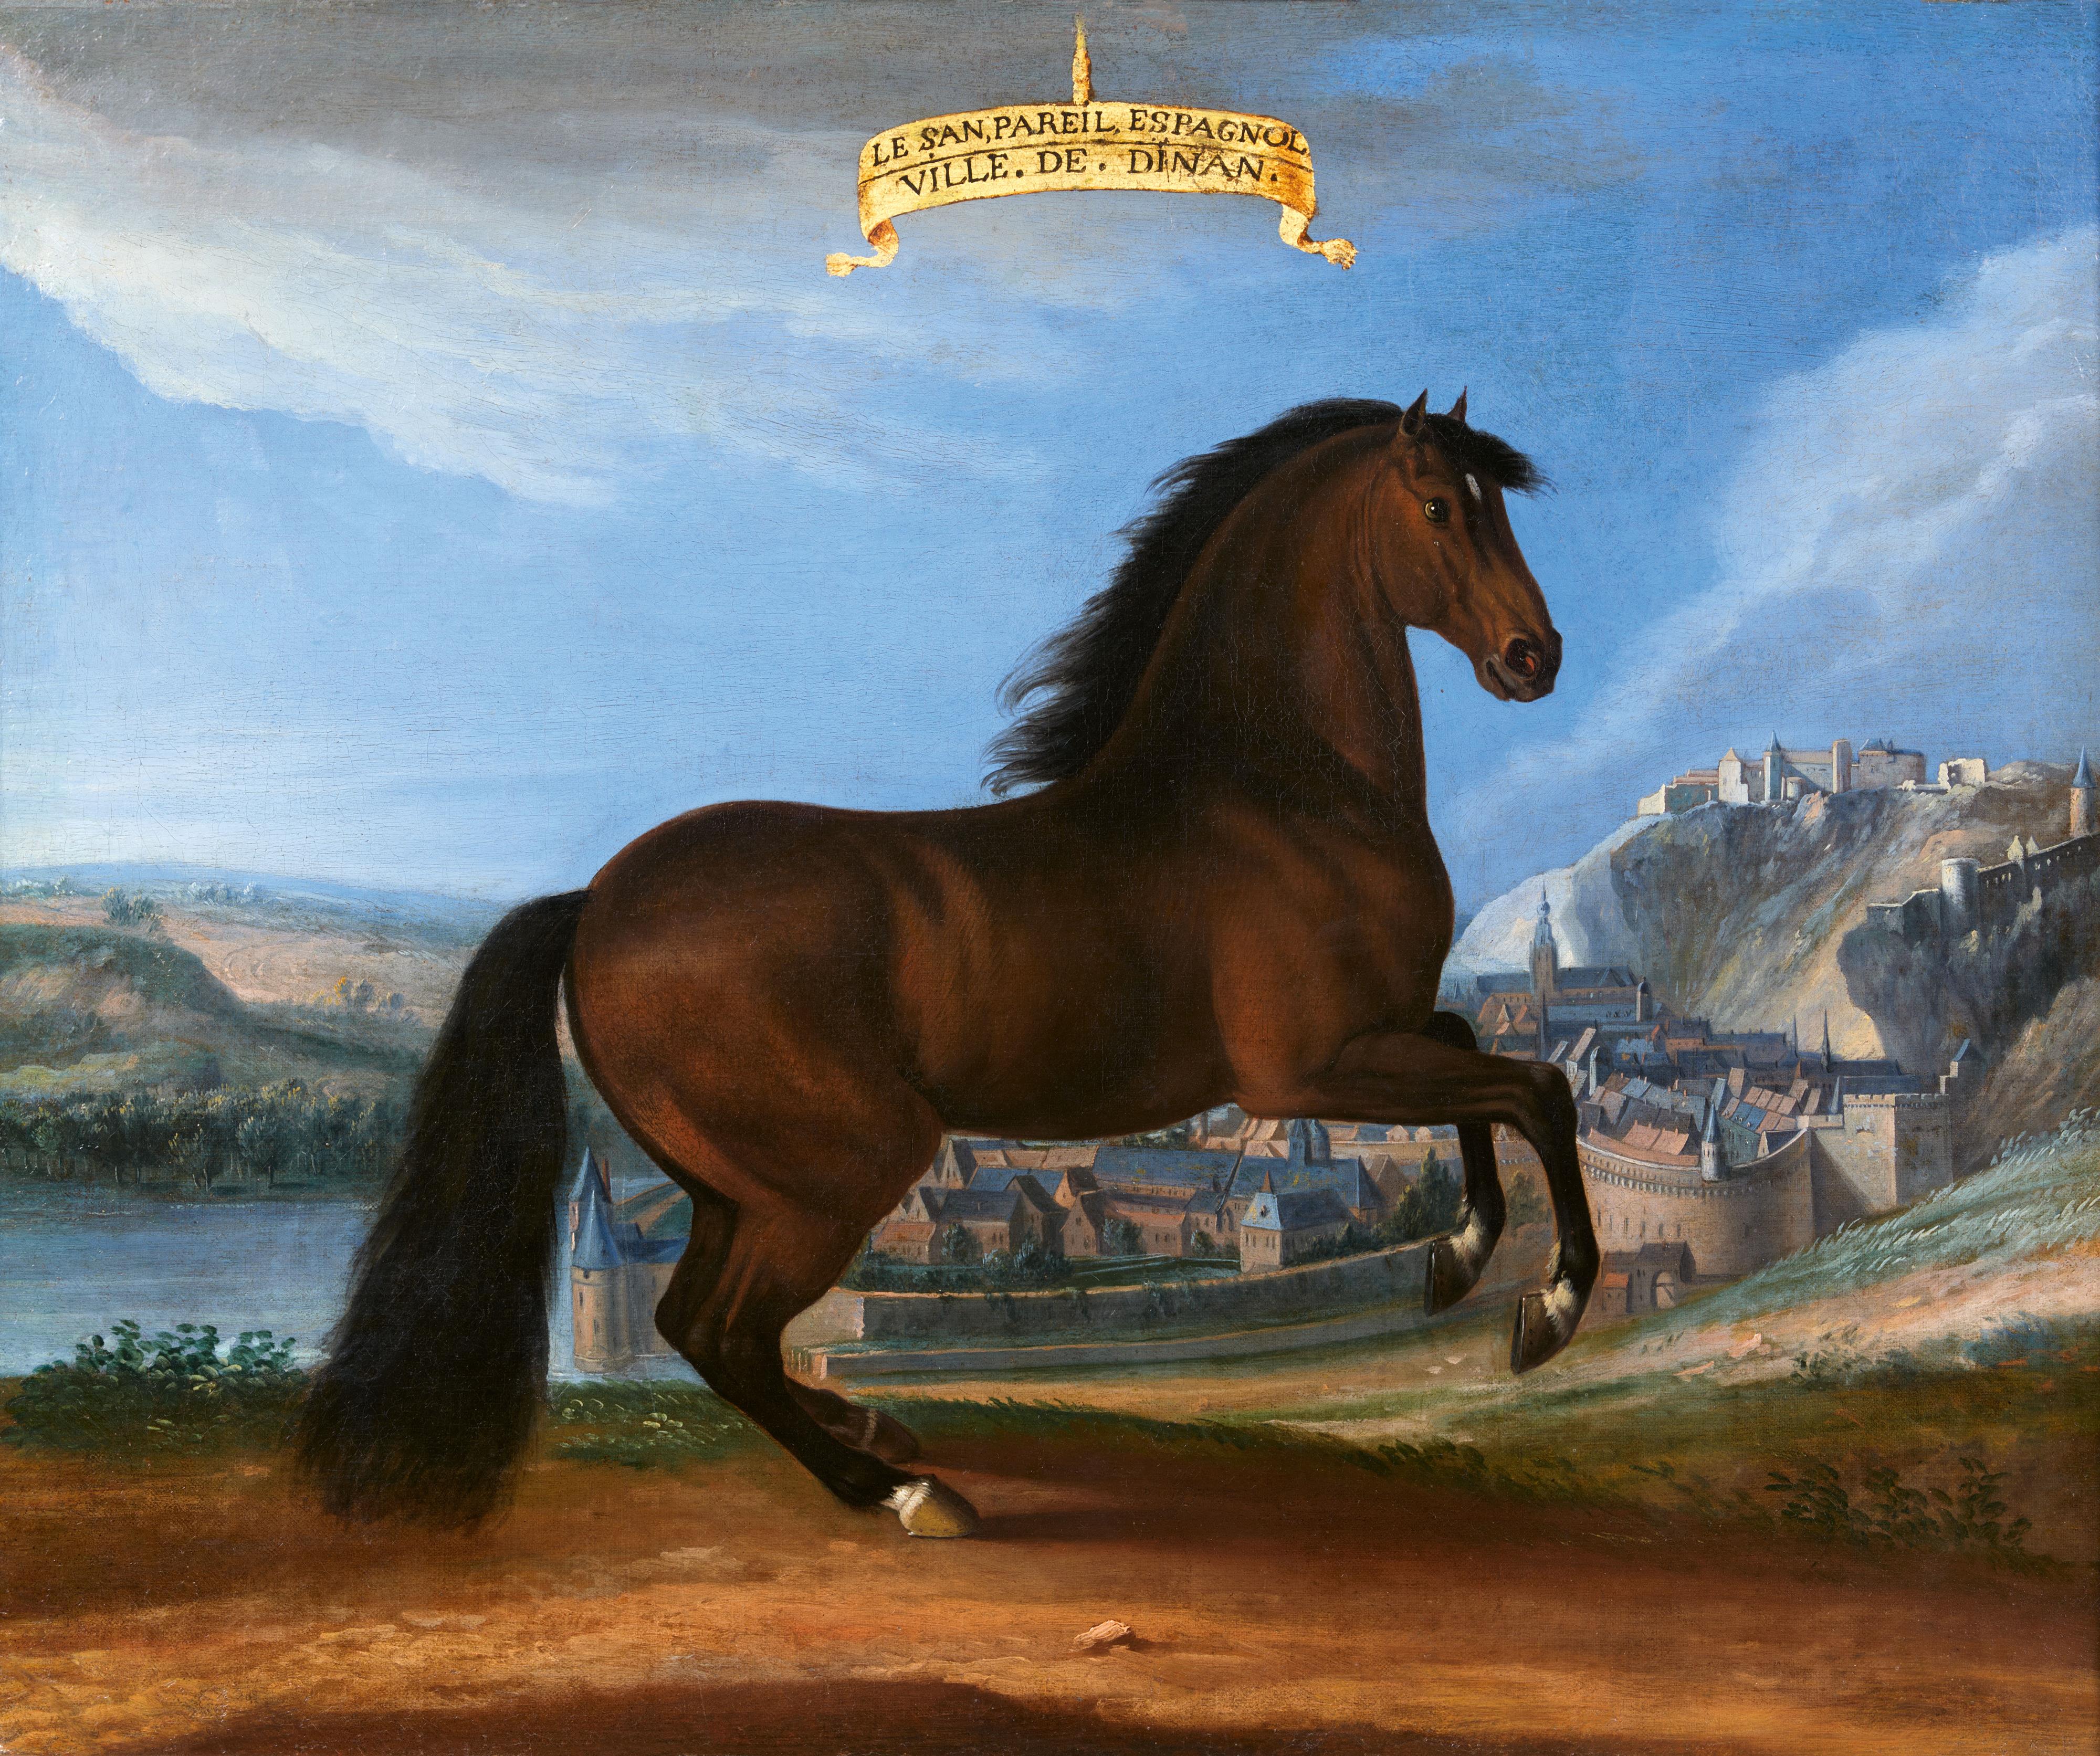 Adam Frans van der Meulen zugeschrieben - "Le San Pariel espagnol", das Pferd Ludwig XIV. vor einer Ansicht der Stadt Dinant - image-1